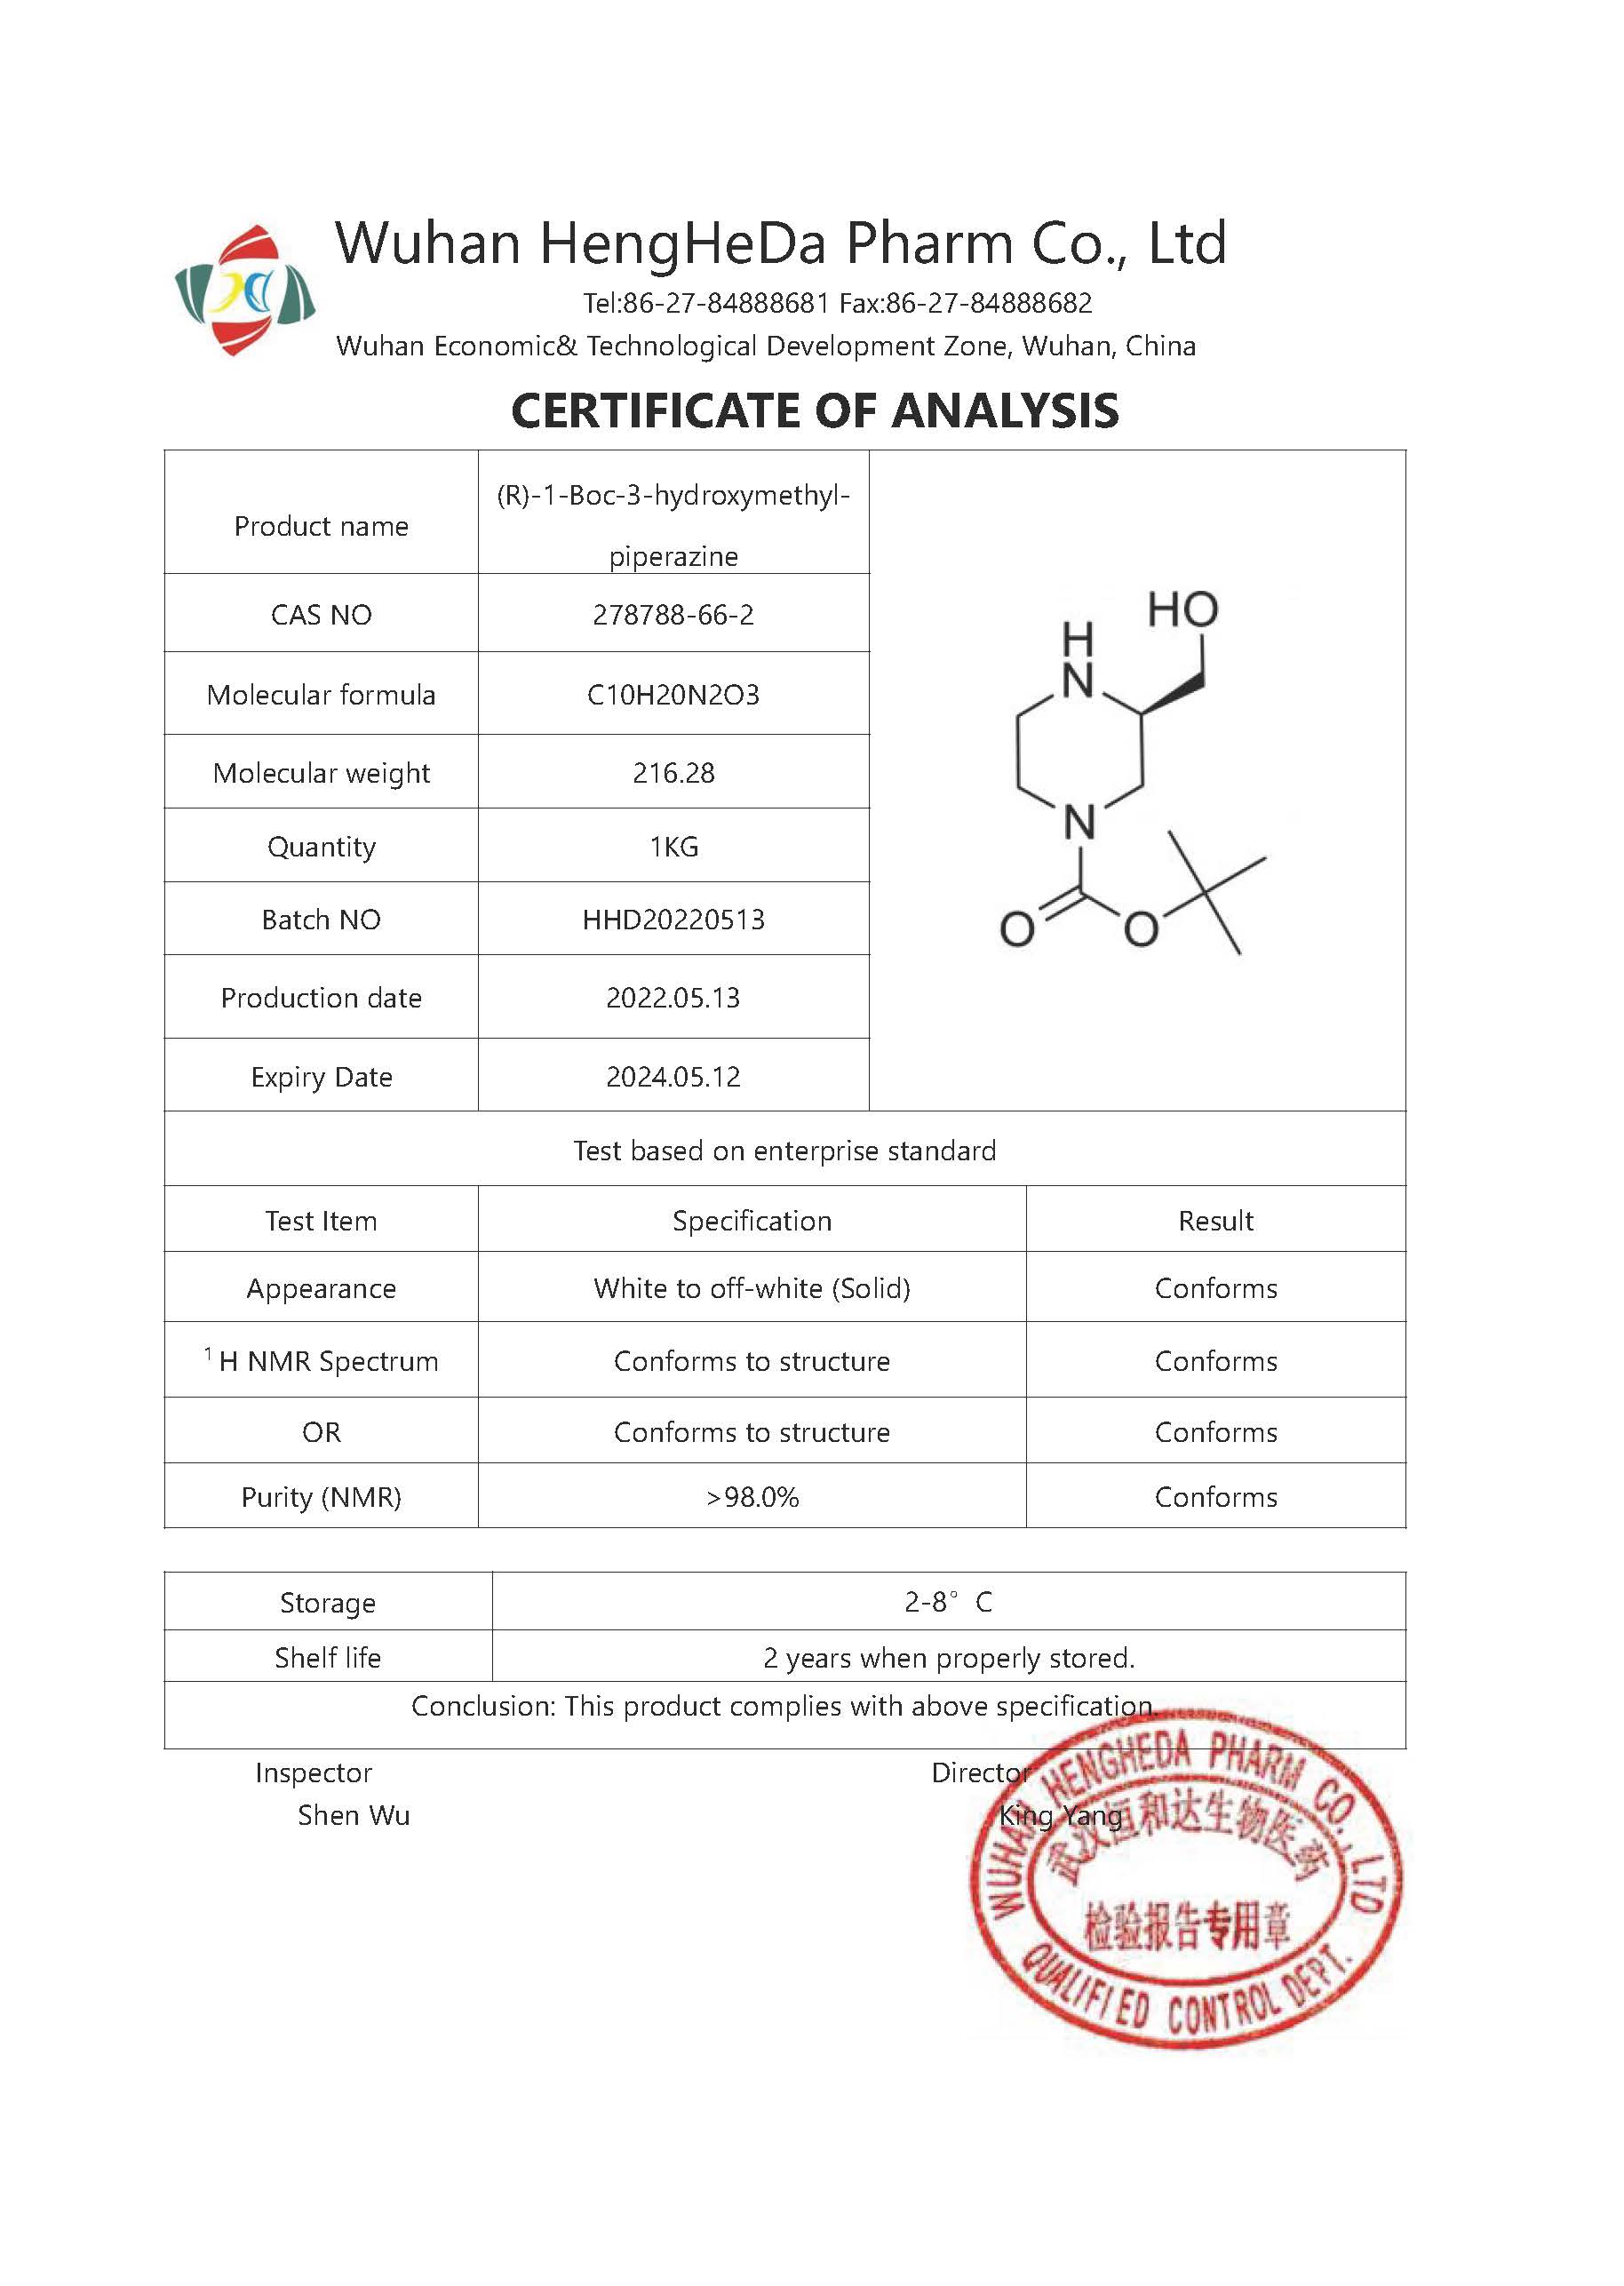 (R)-4-N-Boc-2-HydroxyMethyl-piperazine CAS 278788-66-2